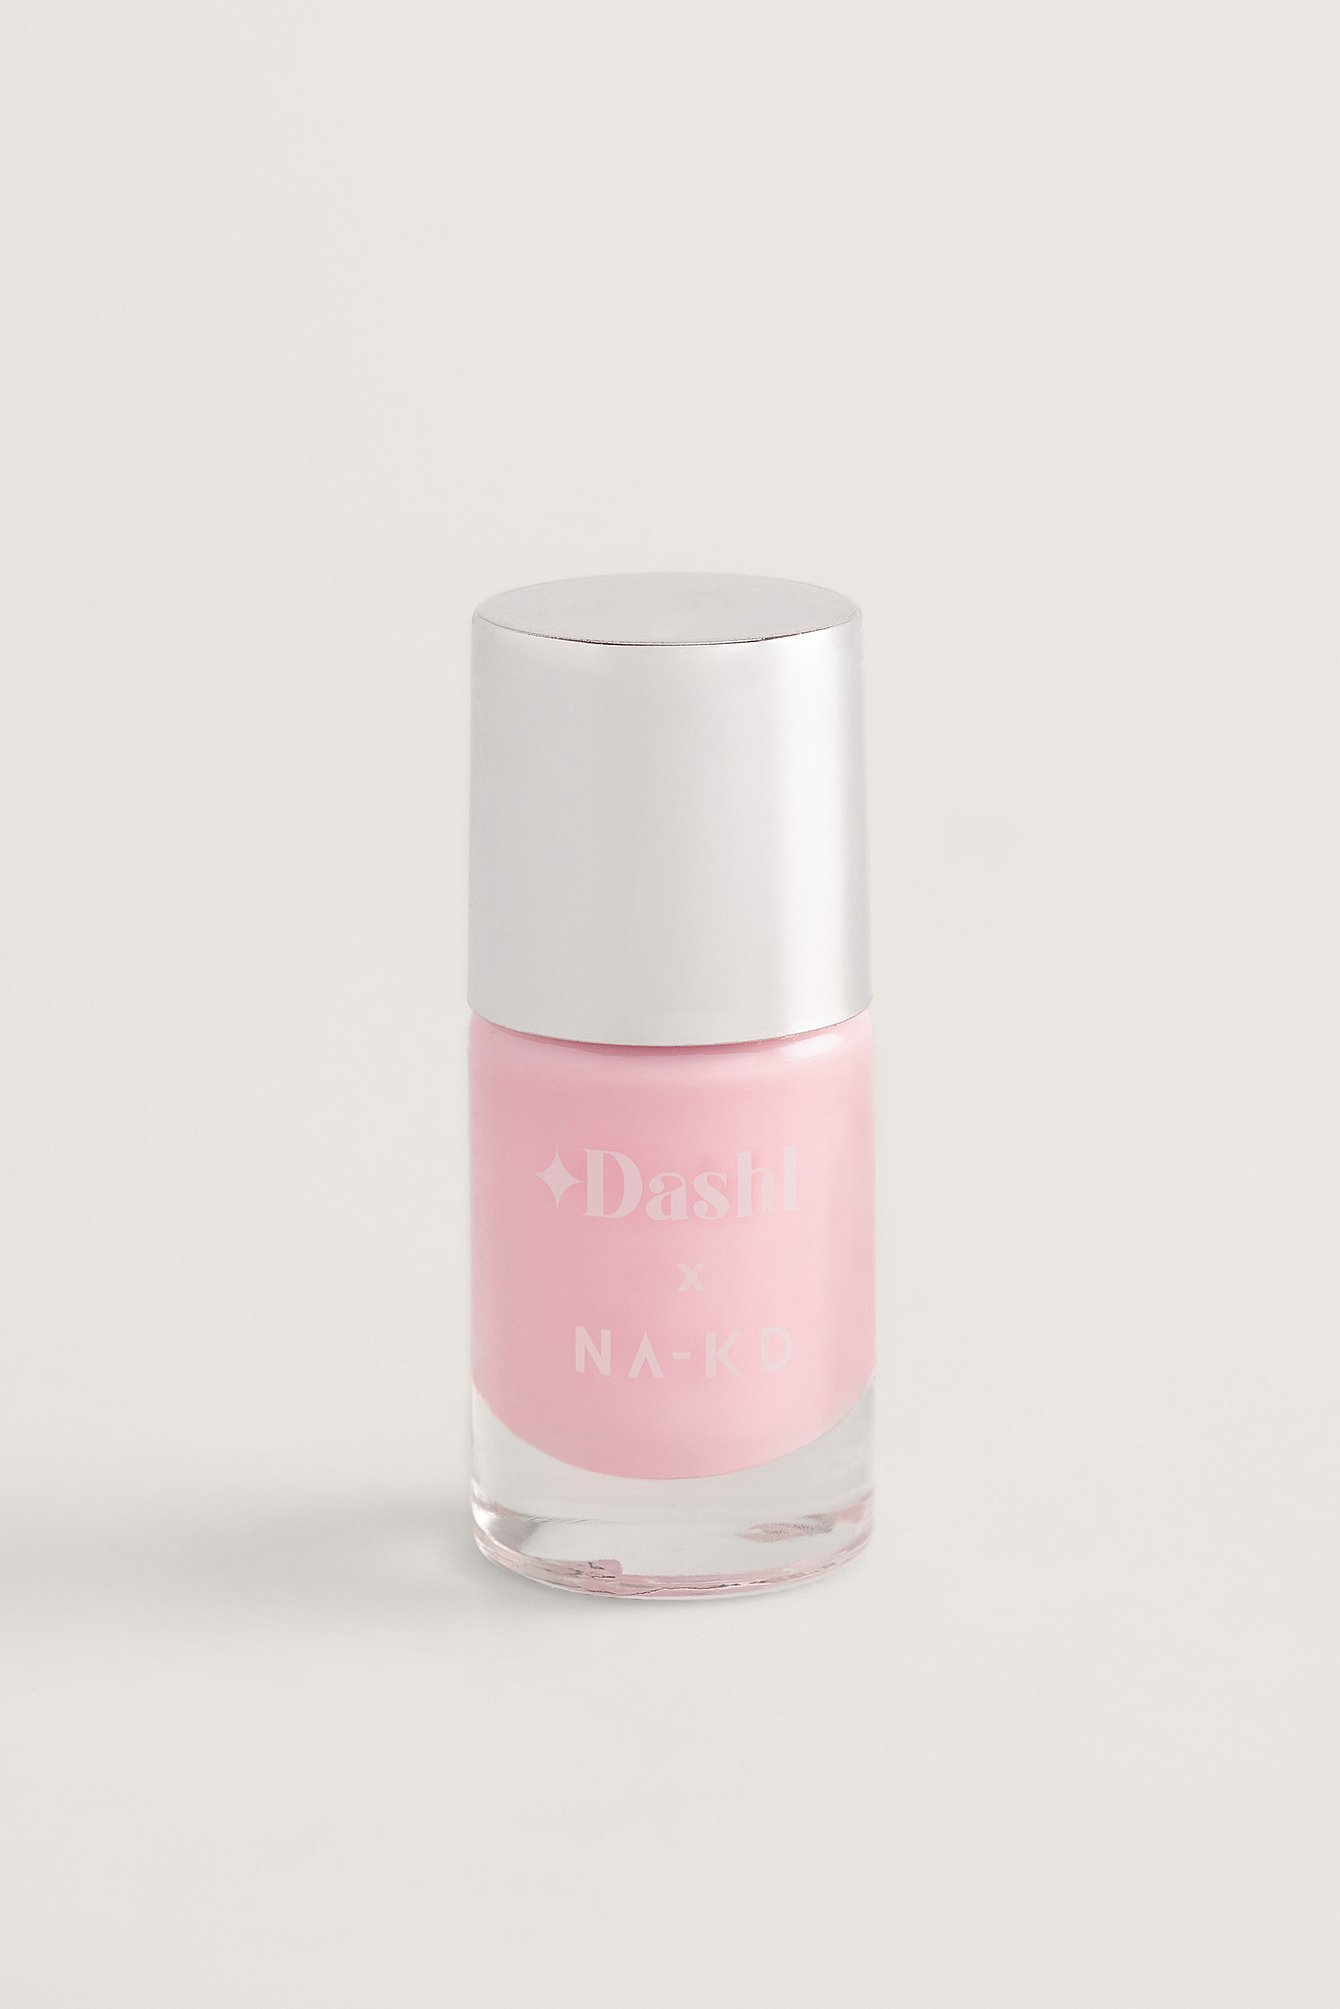 DASHL x NA-KD Nail Polish - Pink